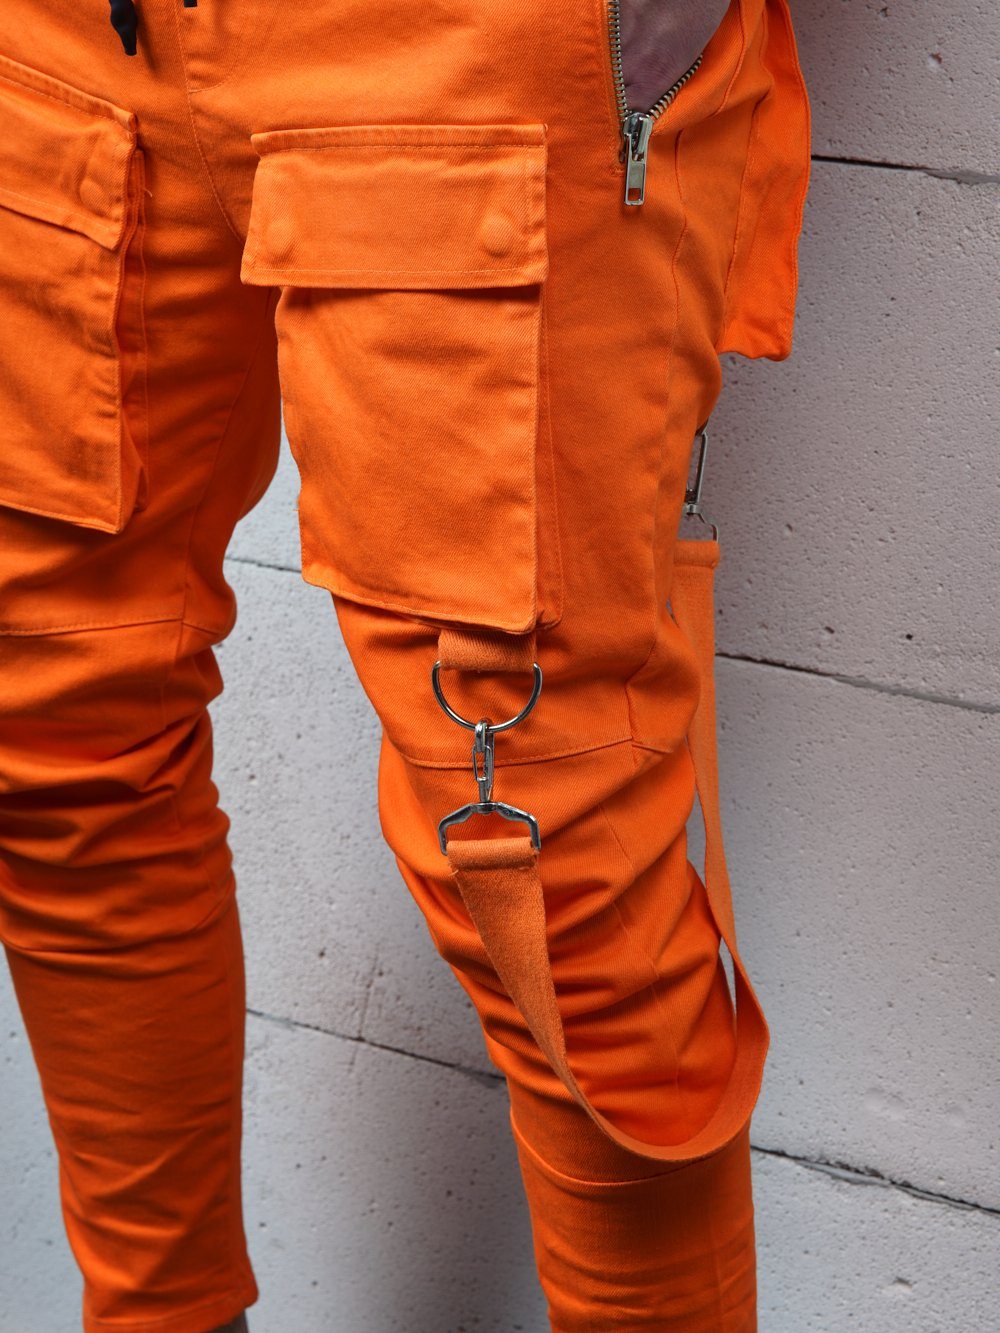 A man wearing ORANGE BRONX cargo pants with straps.